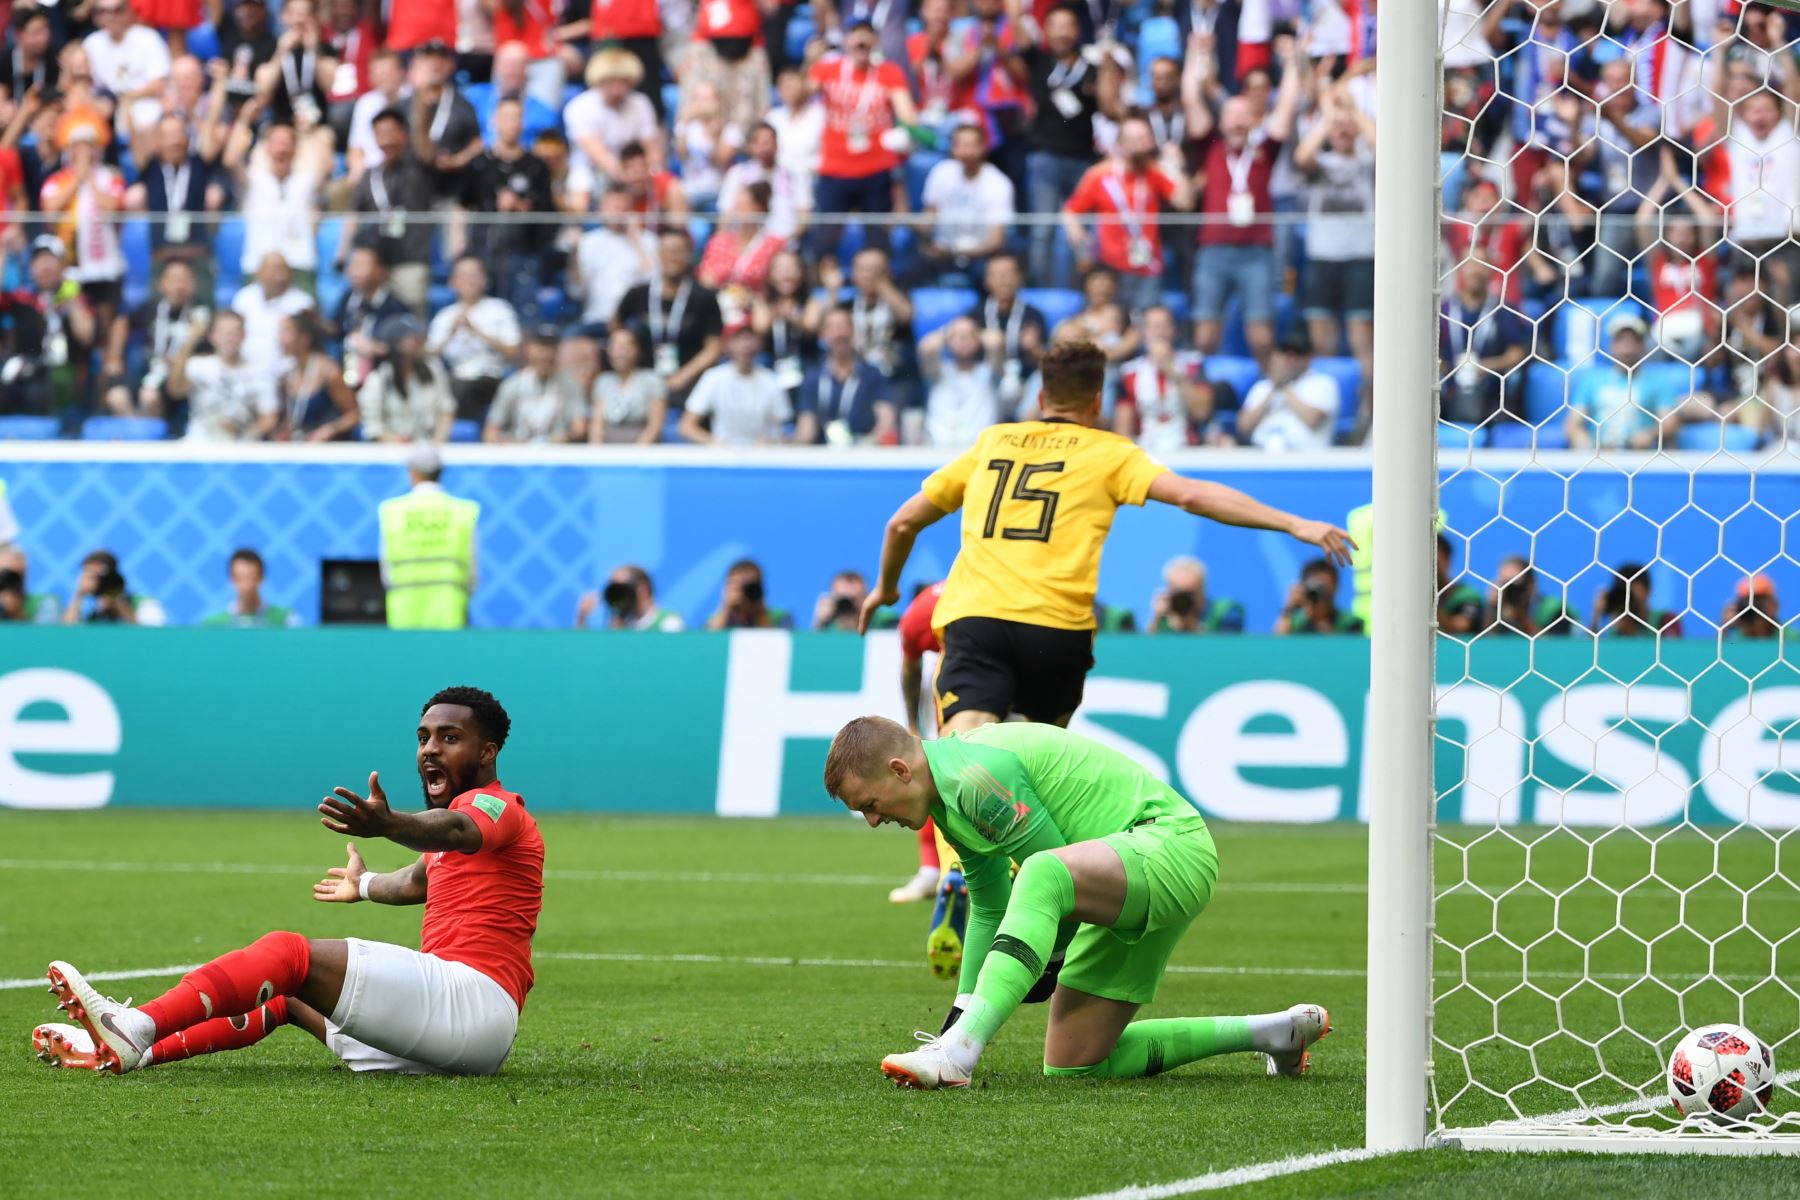 El defensa inglés Danny Rose (L) y el portero inglés Jordan Pickford reaccionan después de que el defensor belga Thomas Meunier (posterior) anotó durante su partido por la Copa Mundial 2018 Rusia por el tercer partido de fútbol entre Bélgica e Inglaterra en el estadio de San Petersburgo en julio 14, 2018. / AFP